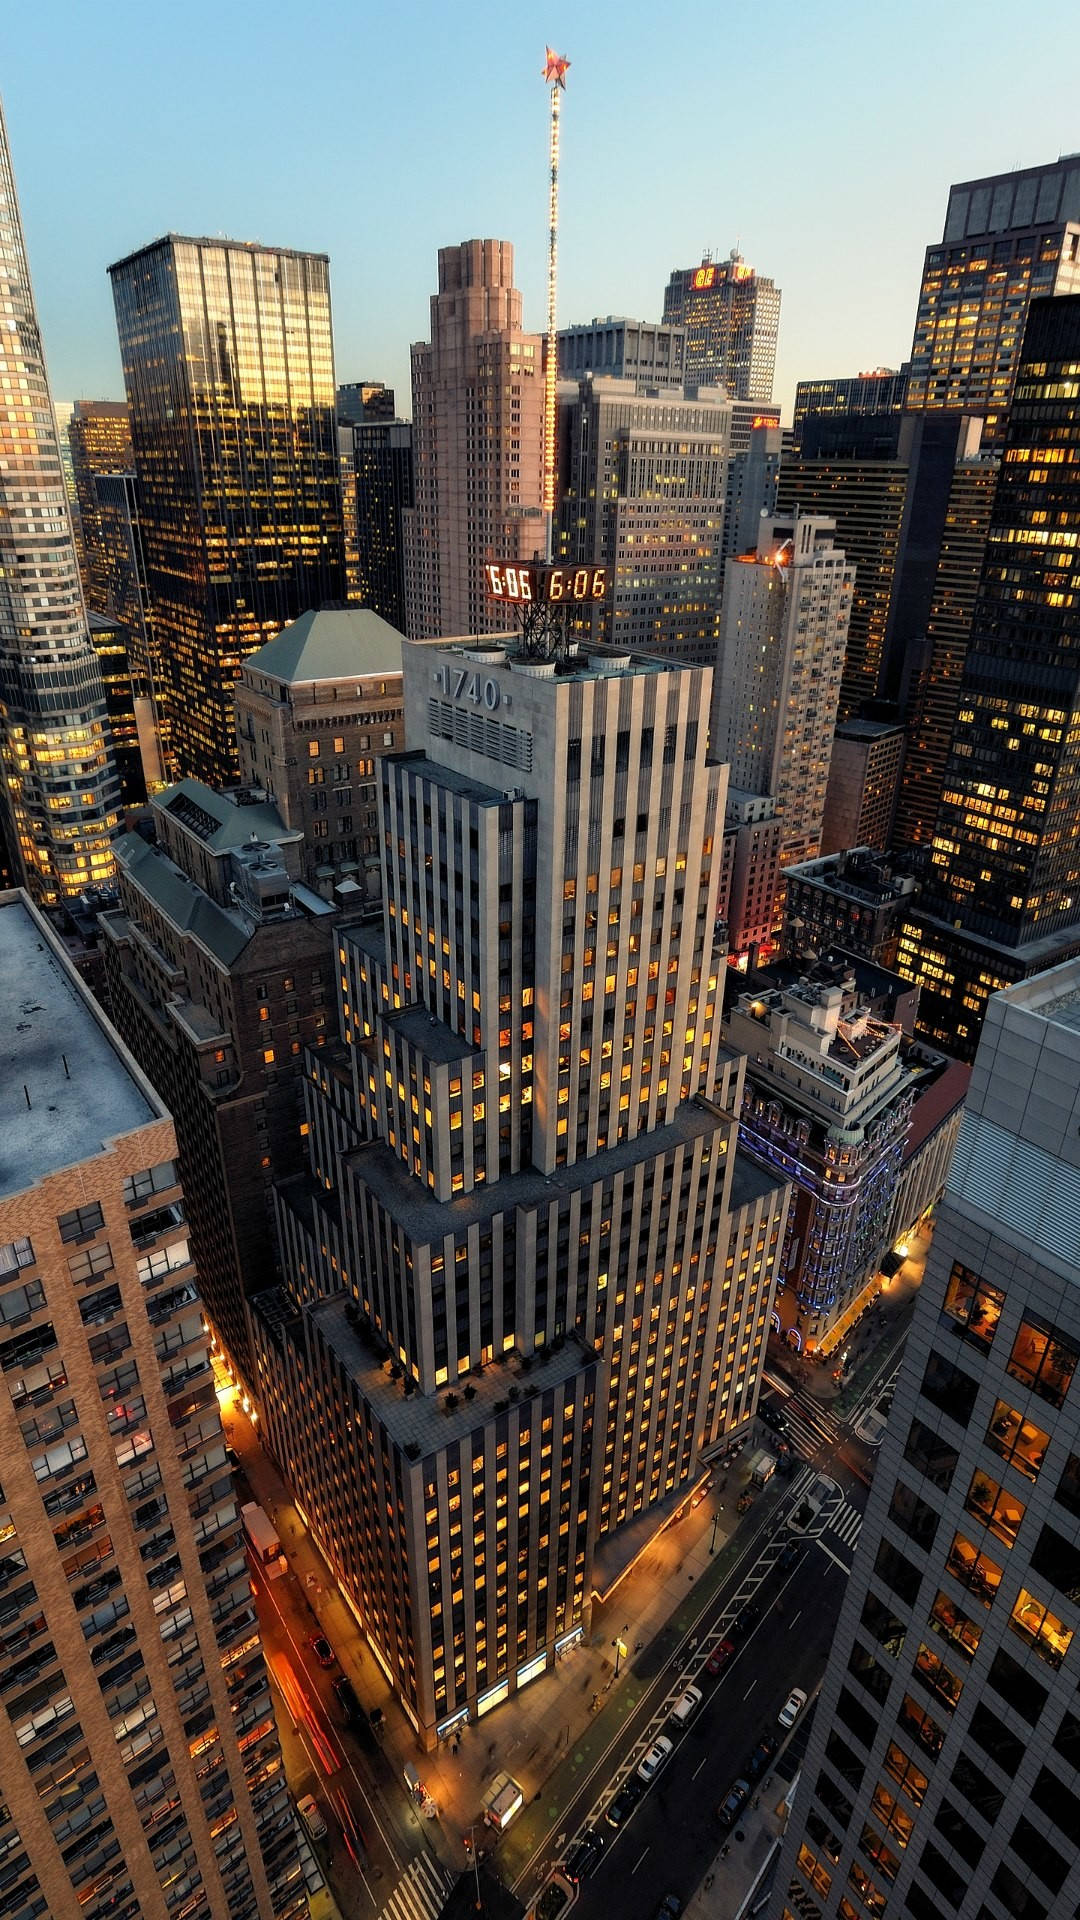 Lajungla De Concreto De La Ciudad De Nueva York En El Iphone X. Fondo de pantalla